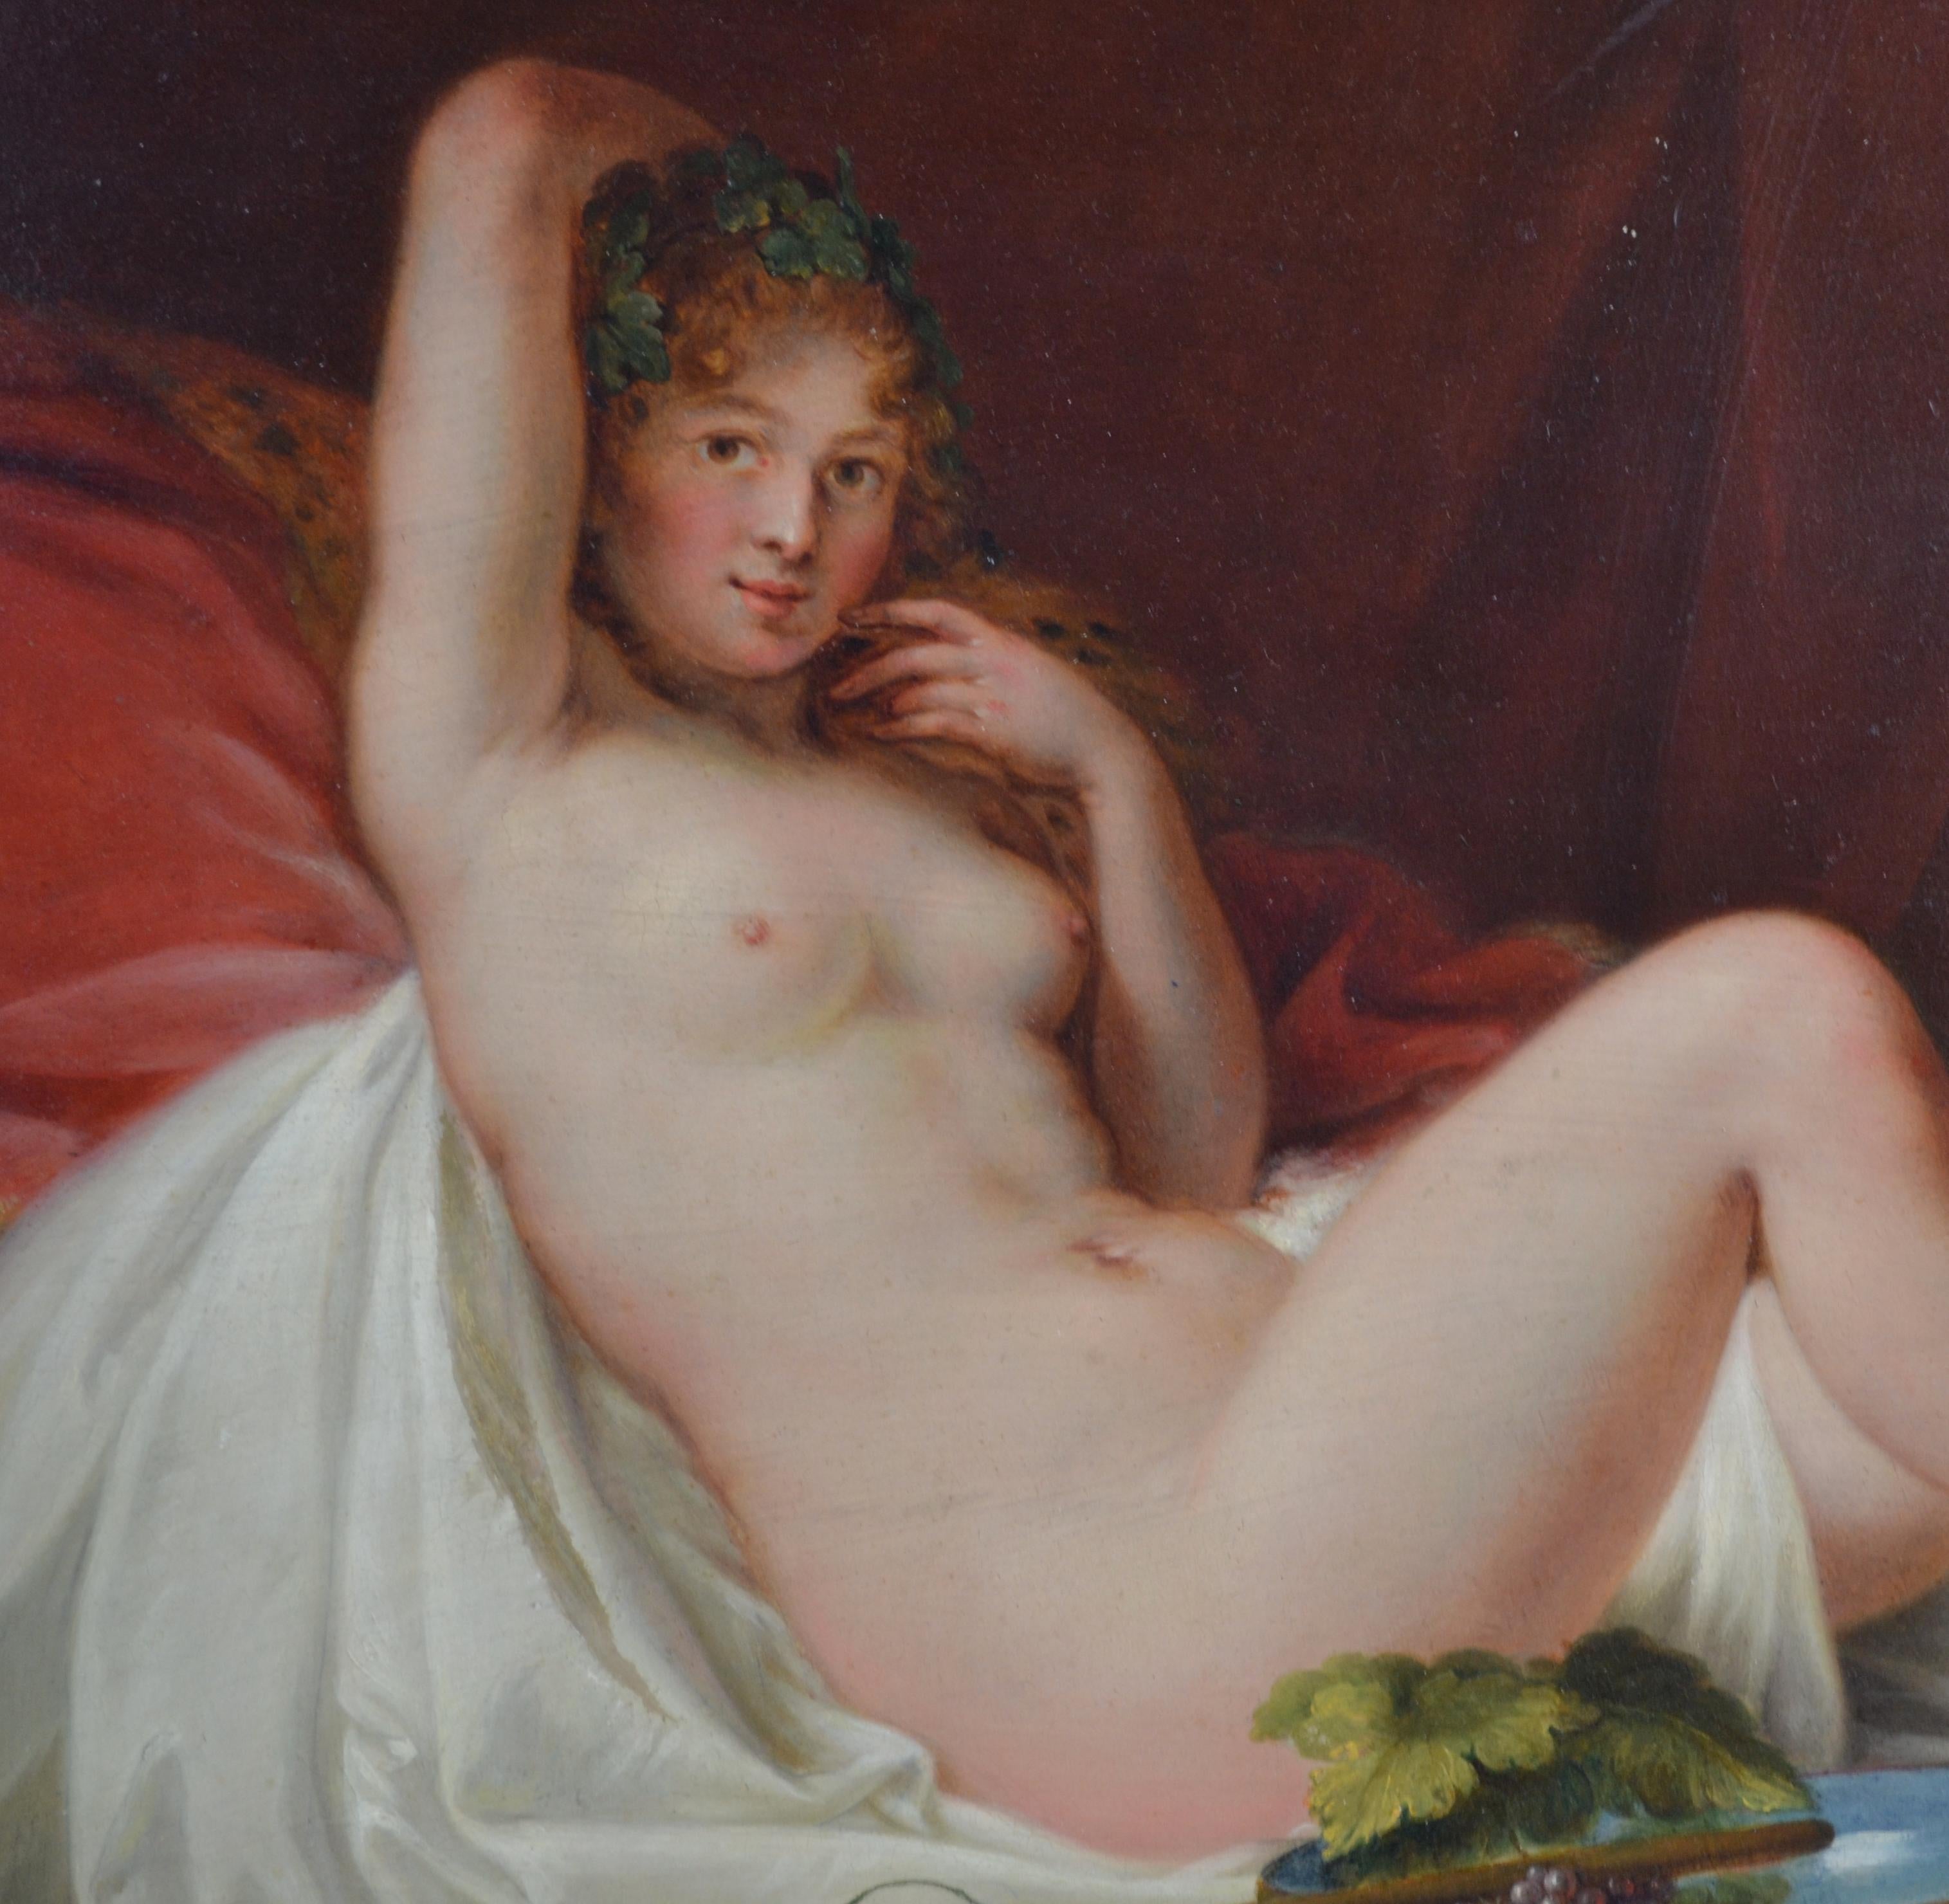 Ein exquisites und seltenes Öl auf Kupferplatte aus dem späten 18. Jahrhundert mit einem liegenden Akt des österreichischen Künstlers Adam J. Braun (1748-1827) in der Art der Venus von Urbino von Tizian. Mit Ausnahme eines Gemäldes des Künstlers,